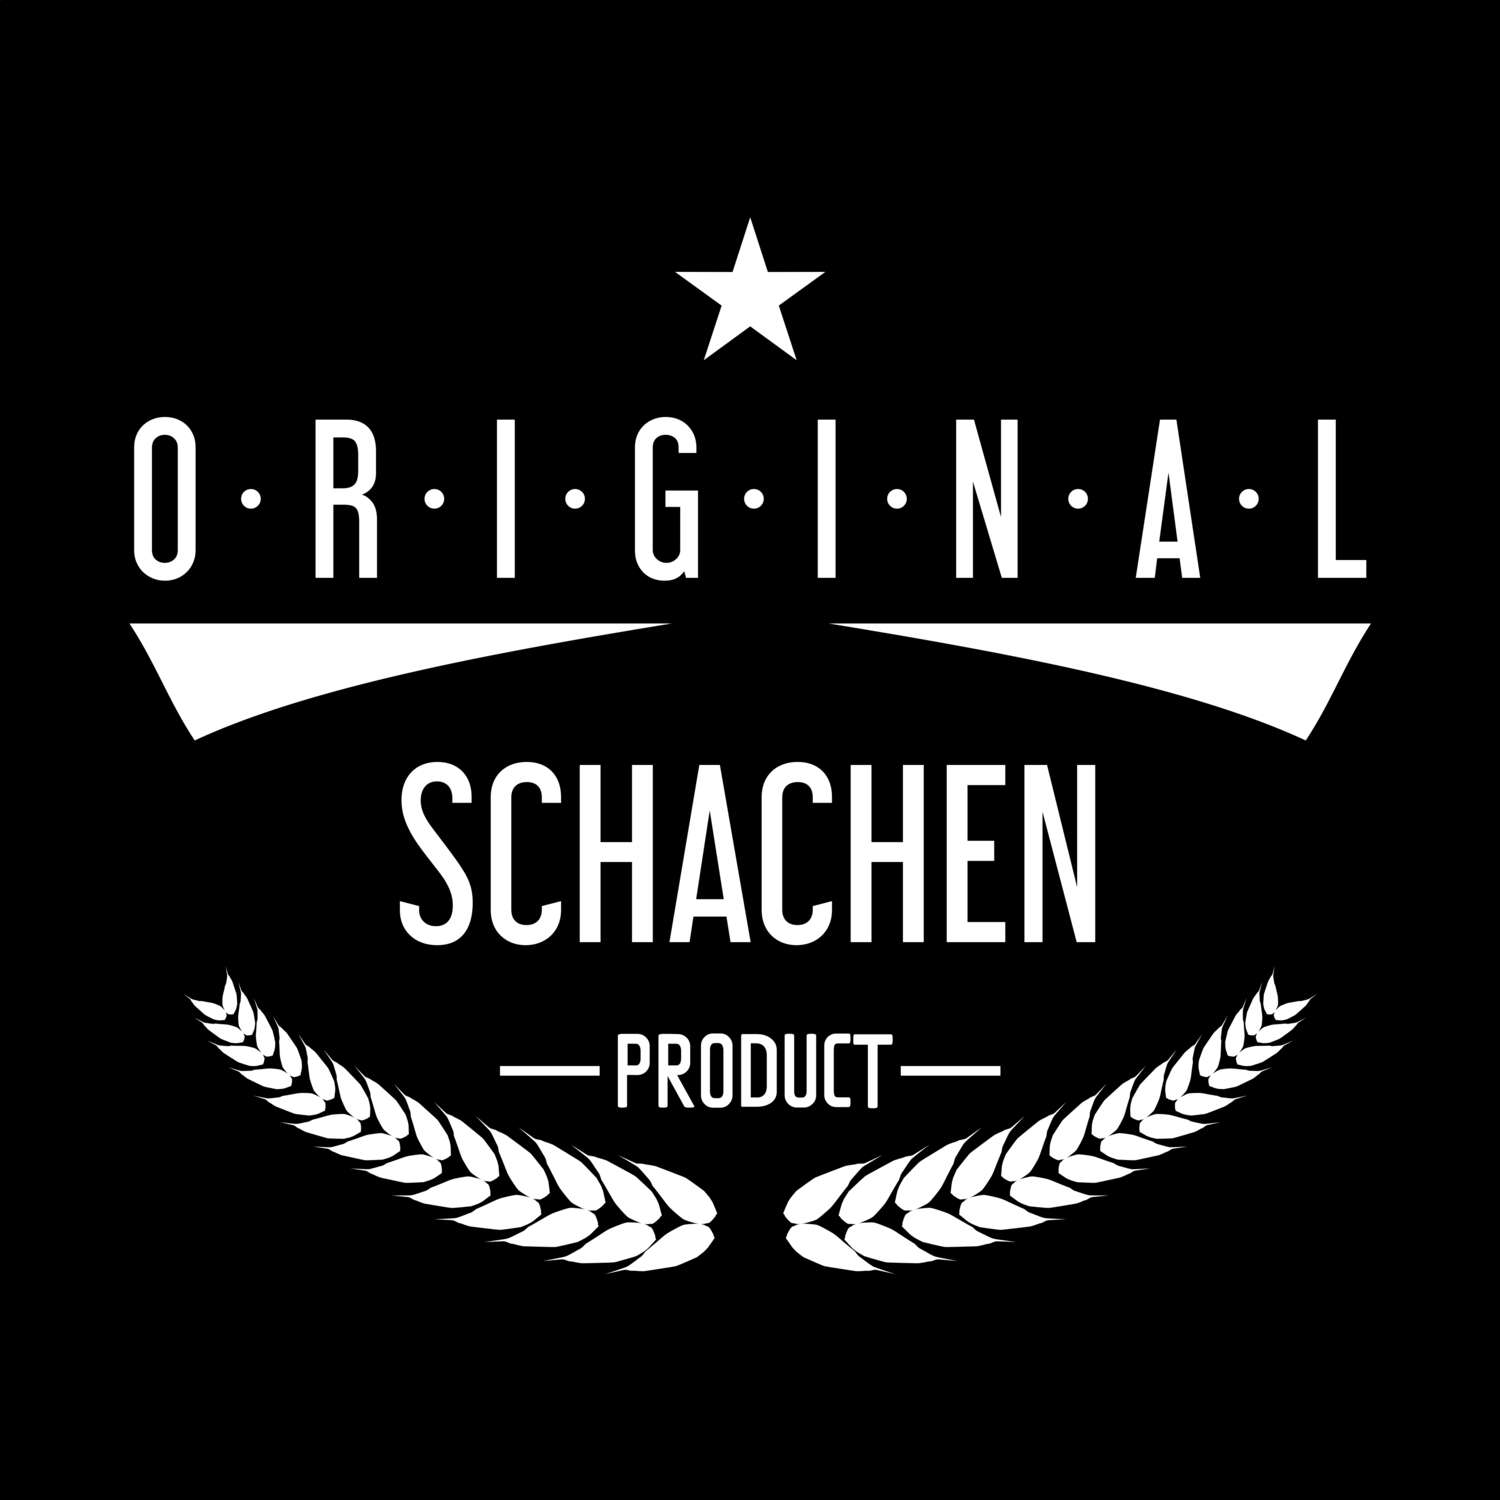 Schachen T-Shirt »Original Product«